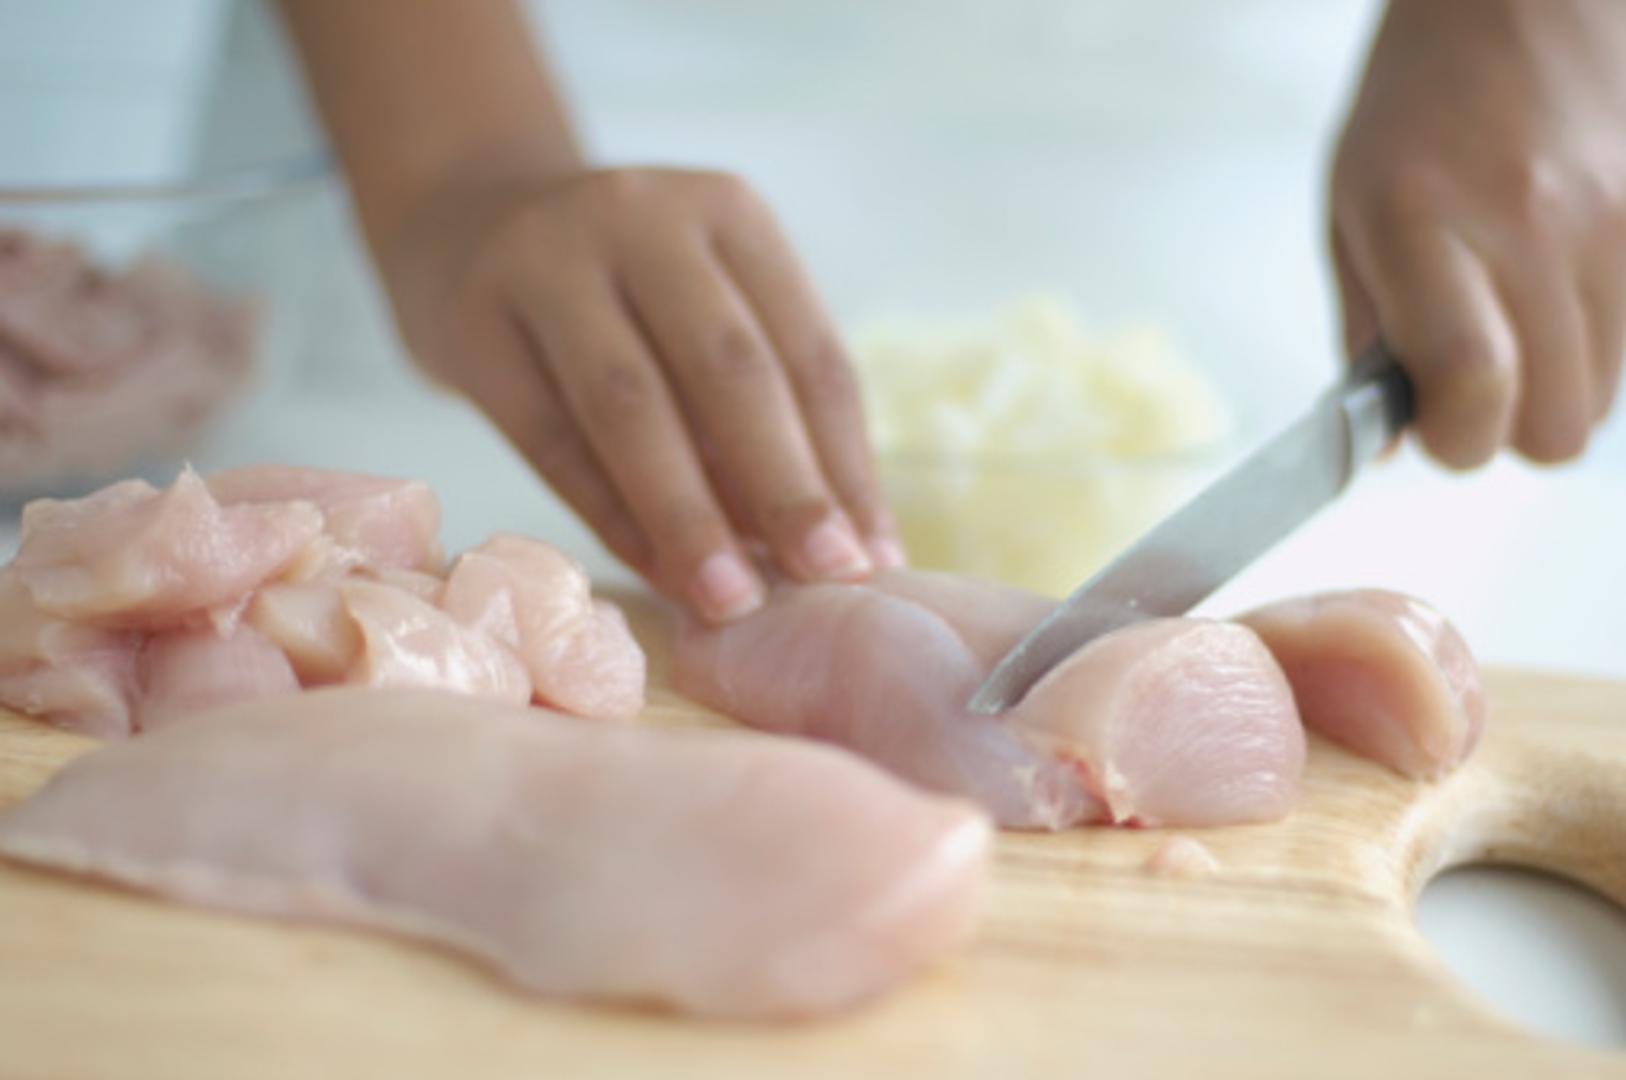 Ako ste pileće meso dirali rukama, svakako nemojte zaboraviti dobro oprati ruke nakon toga prije nego nastavite s pripremom ostalih namirnica. 